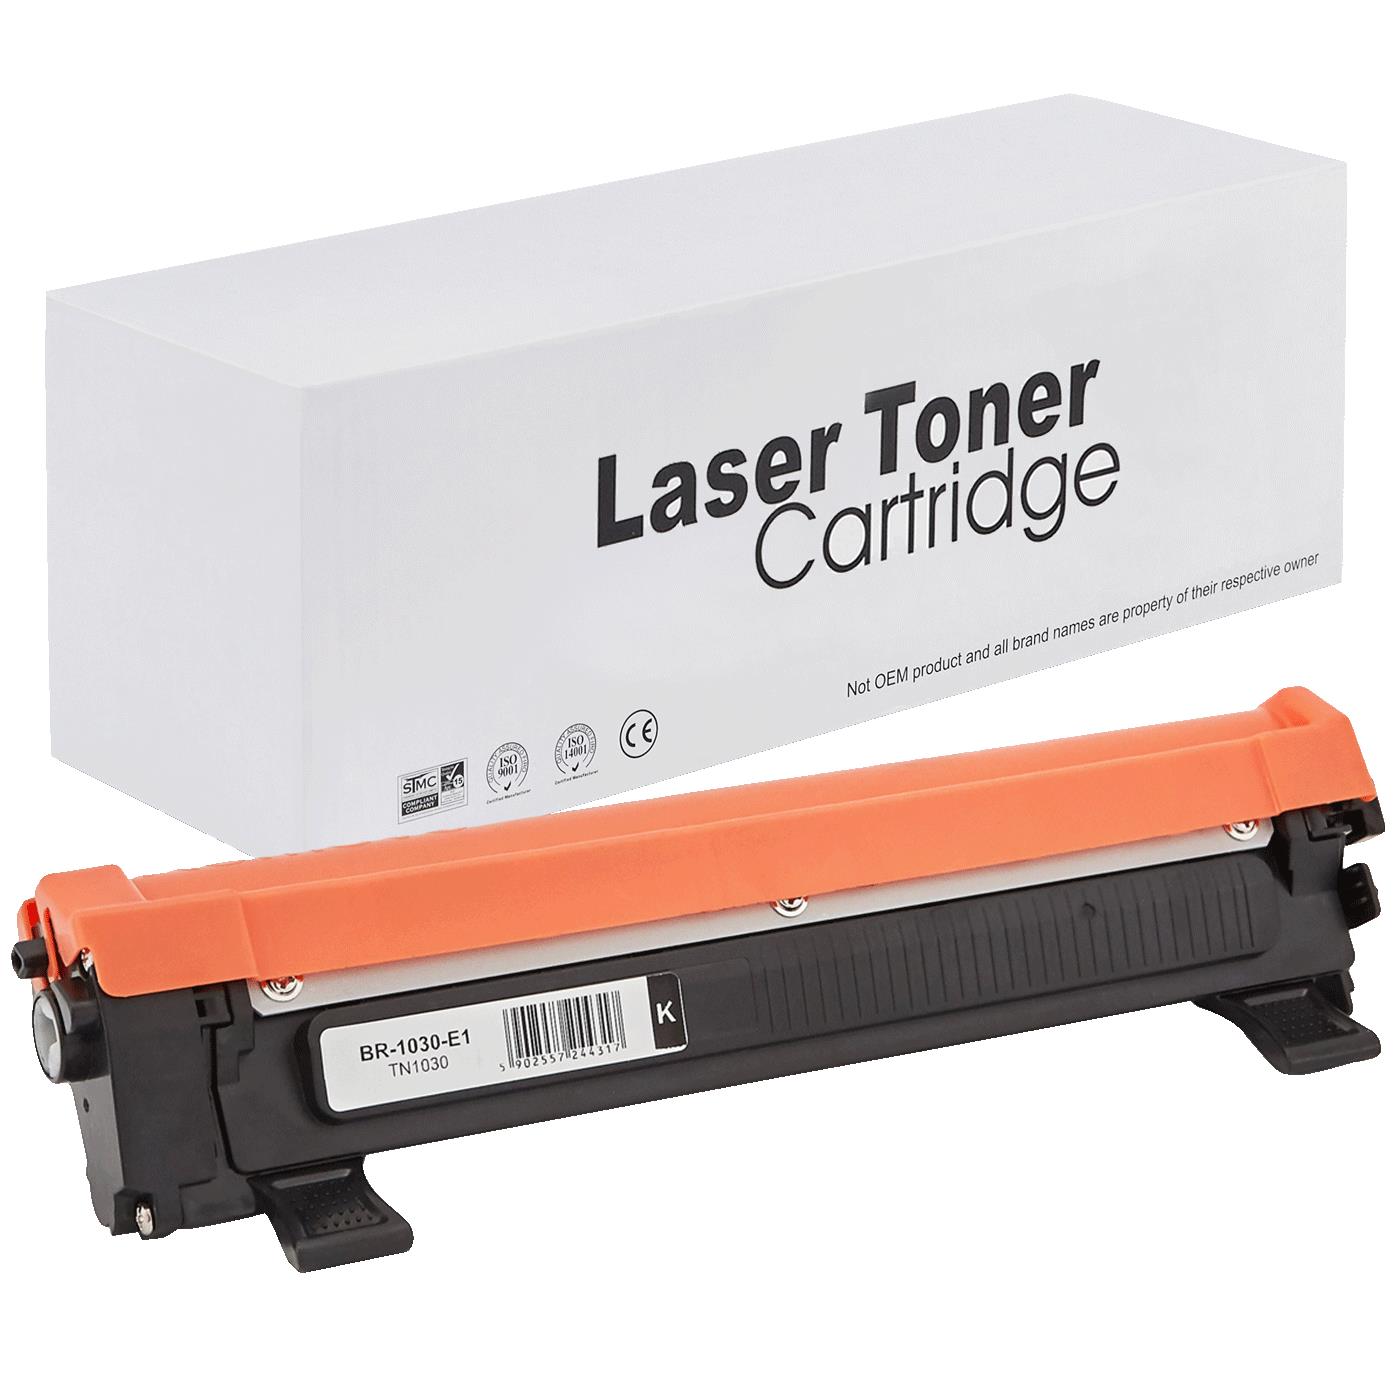 съвместима тонер касета за принтери и печатащи устройства на Brother DCP-1510 Toner BR-1030 | TN1030 / TN1050 / TN-1030. Ниски цени, прецизно изпълнение, високо качество.